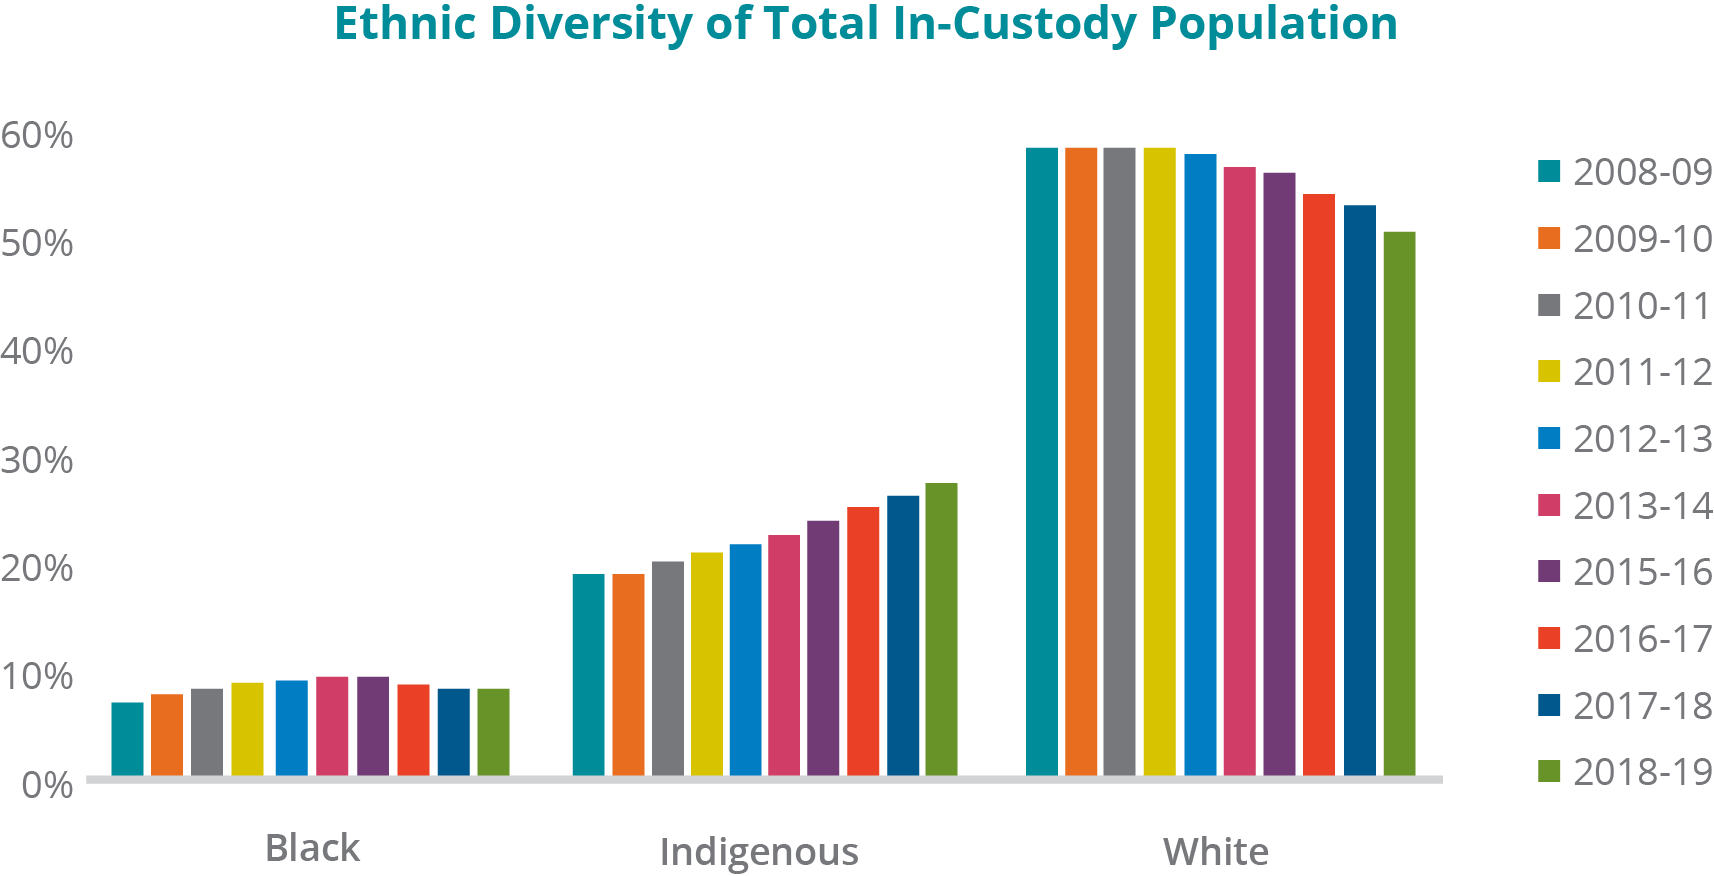 Un graphique illustrant la diversité ethnique de l'ensemble de la population sous garde, de 2008 2009 à 2018 2019 : -	Détenus noirs : En 2008 2009, 7,14 %; 2009 2010, 7,81 %; 2010 2011, 8,29 %; 2011 2012, 8,99 %; 2012 2013, 9,13 %; 2013 2014, 9,57 %; 2015 2016, 9,73 %; 2016 2017, 8,97 %; 2017 2018, 8,58 %; 2018 2019, 8,37 %. - Détenus autochtones : En 2008 2009, 19,41 %; 2009 2010, 19,58 %; 2010 2011, 20,54 %; 2011 2012, 21,52 %; 2012 2013, 22,31 %; 2013 2014, 23,07 %; 2015 2016, 24,57 %; 2016 2017, 25,71 %; 2017 2018, 26,82 % et 2018 2019, 27,80 %. - Détenus blancs : En 2008 2009, 66,38 %; en 2009 2010, 65,31 %; en 2010 2011, 63,79 %; en 2011 2012, 61,37 %; en 2012 2013, 59,32 %; en 2013 2014, 57,97 %; en 2015 2016, 57,44 %; en 2016 2017, 55,35 %; en 2017 2018, 54,00 %; en 2018 2019, 51,99 %. Remarque : Aucune donnée concernant l'exercice 2014 2015 n'était accessible dans l'Entrepôt de données du SCC. D'autres groupes ethniques ont été exclus, car ils étaient trop petits en comparaison.